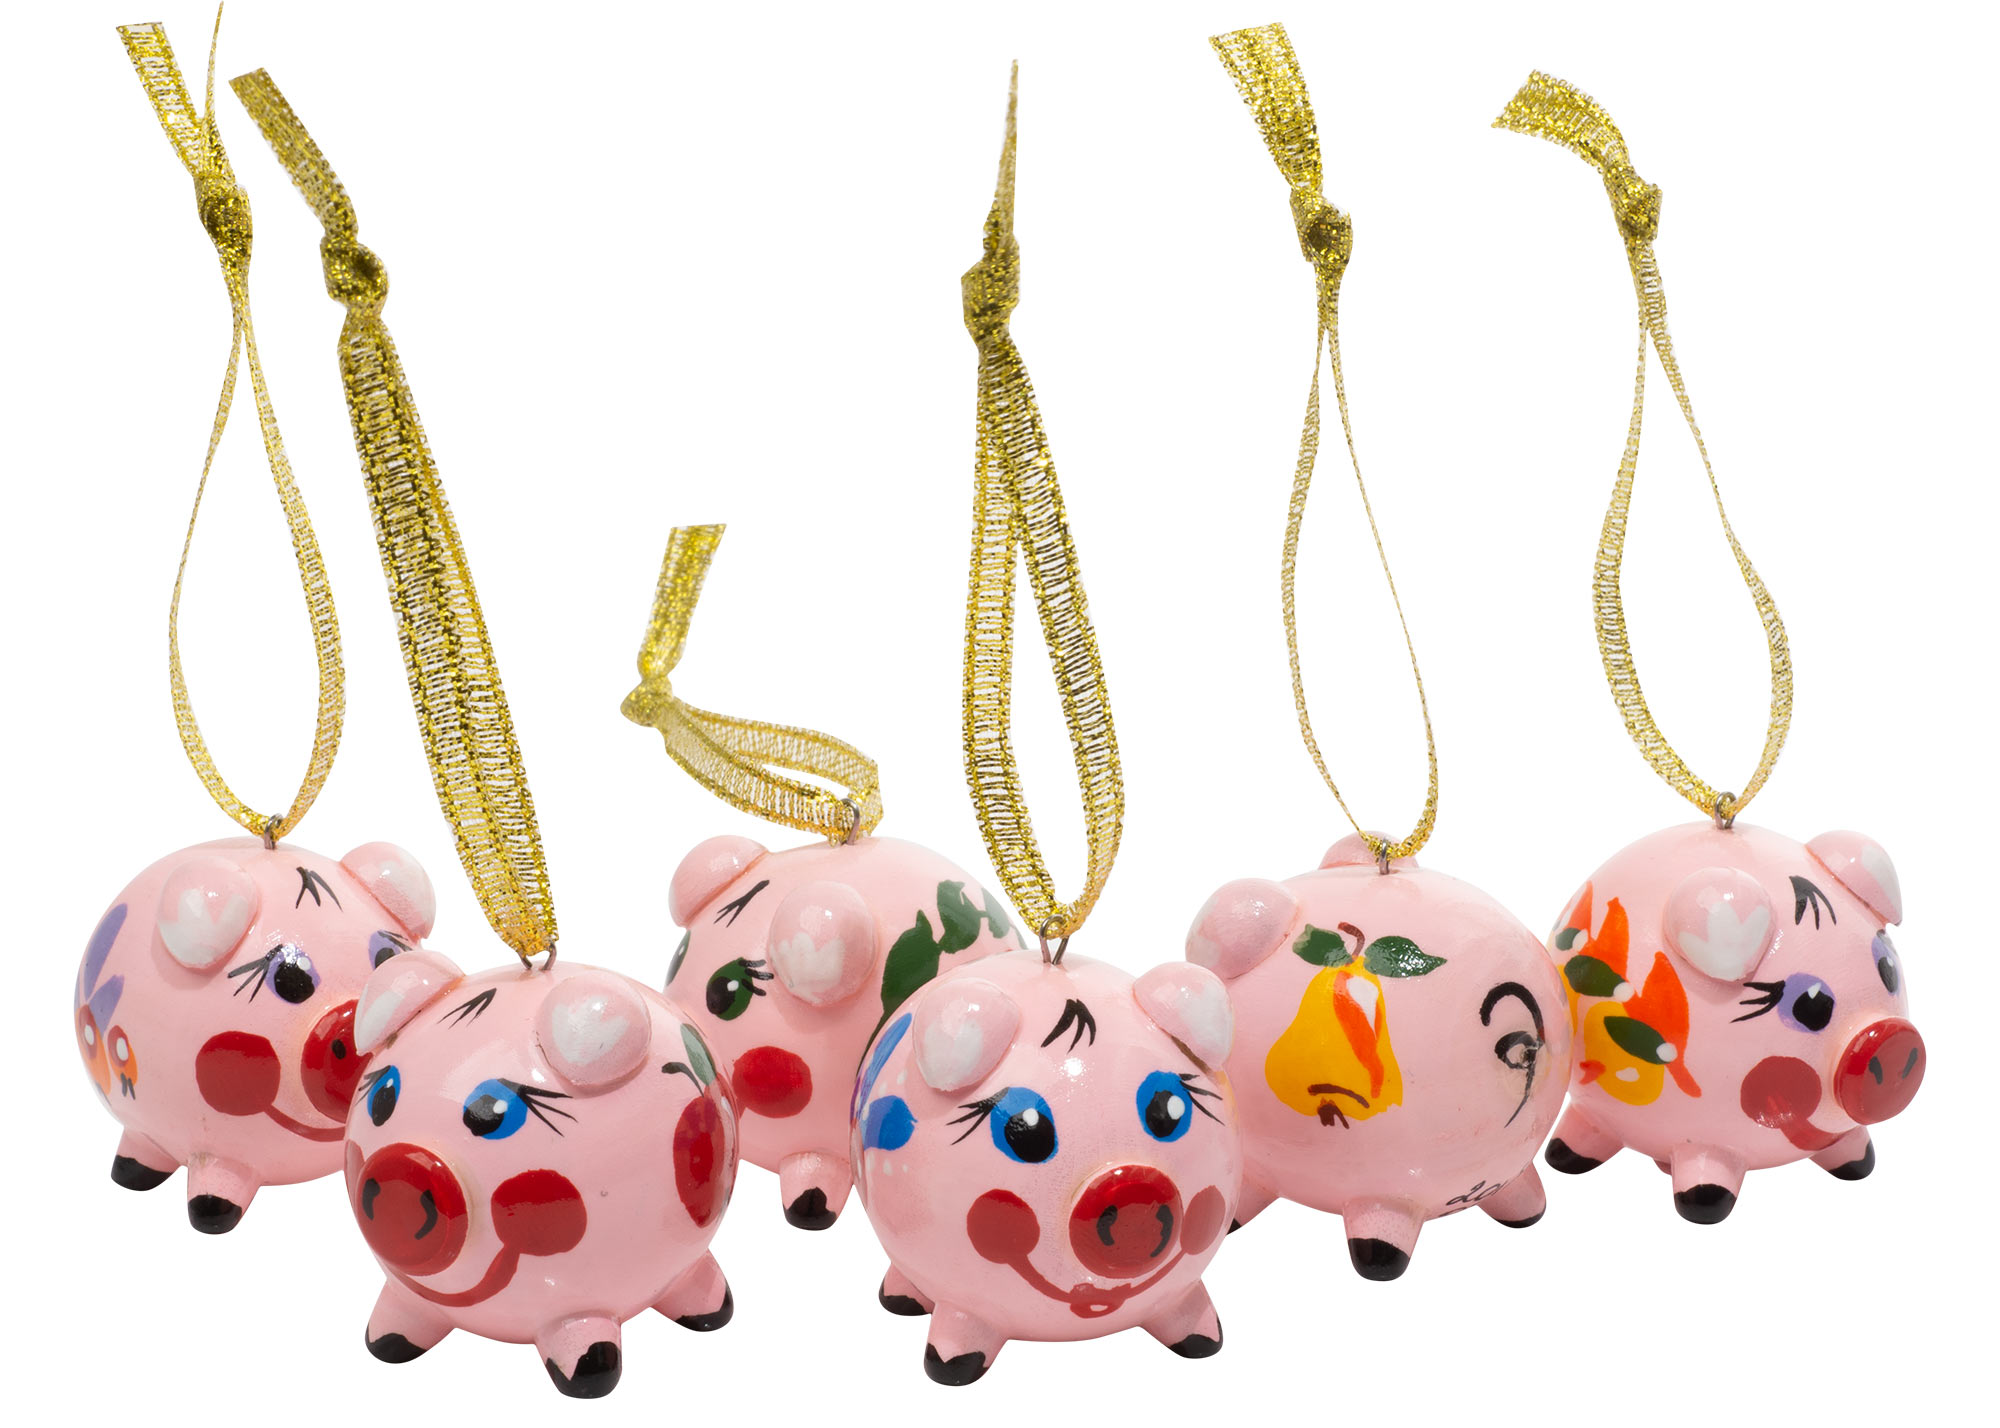 Buy Pig Ornament, 1.5" at GoldenCockerel.com